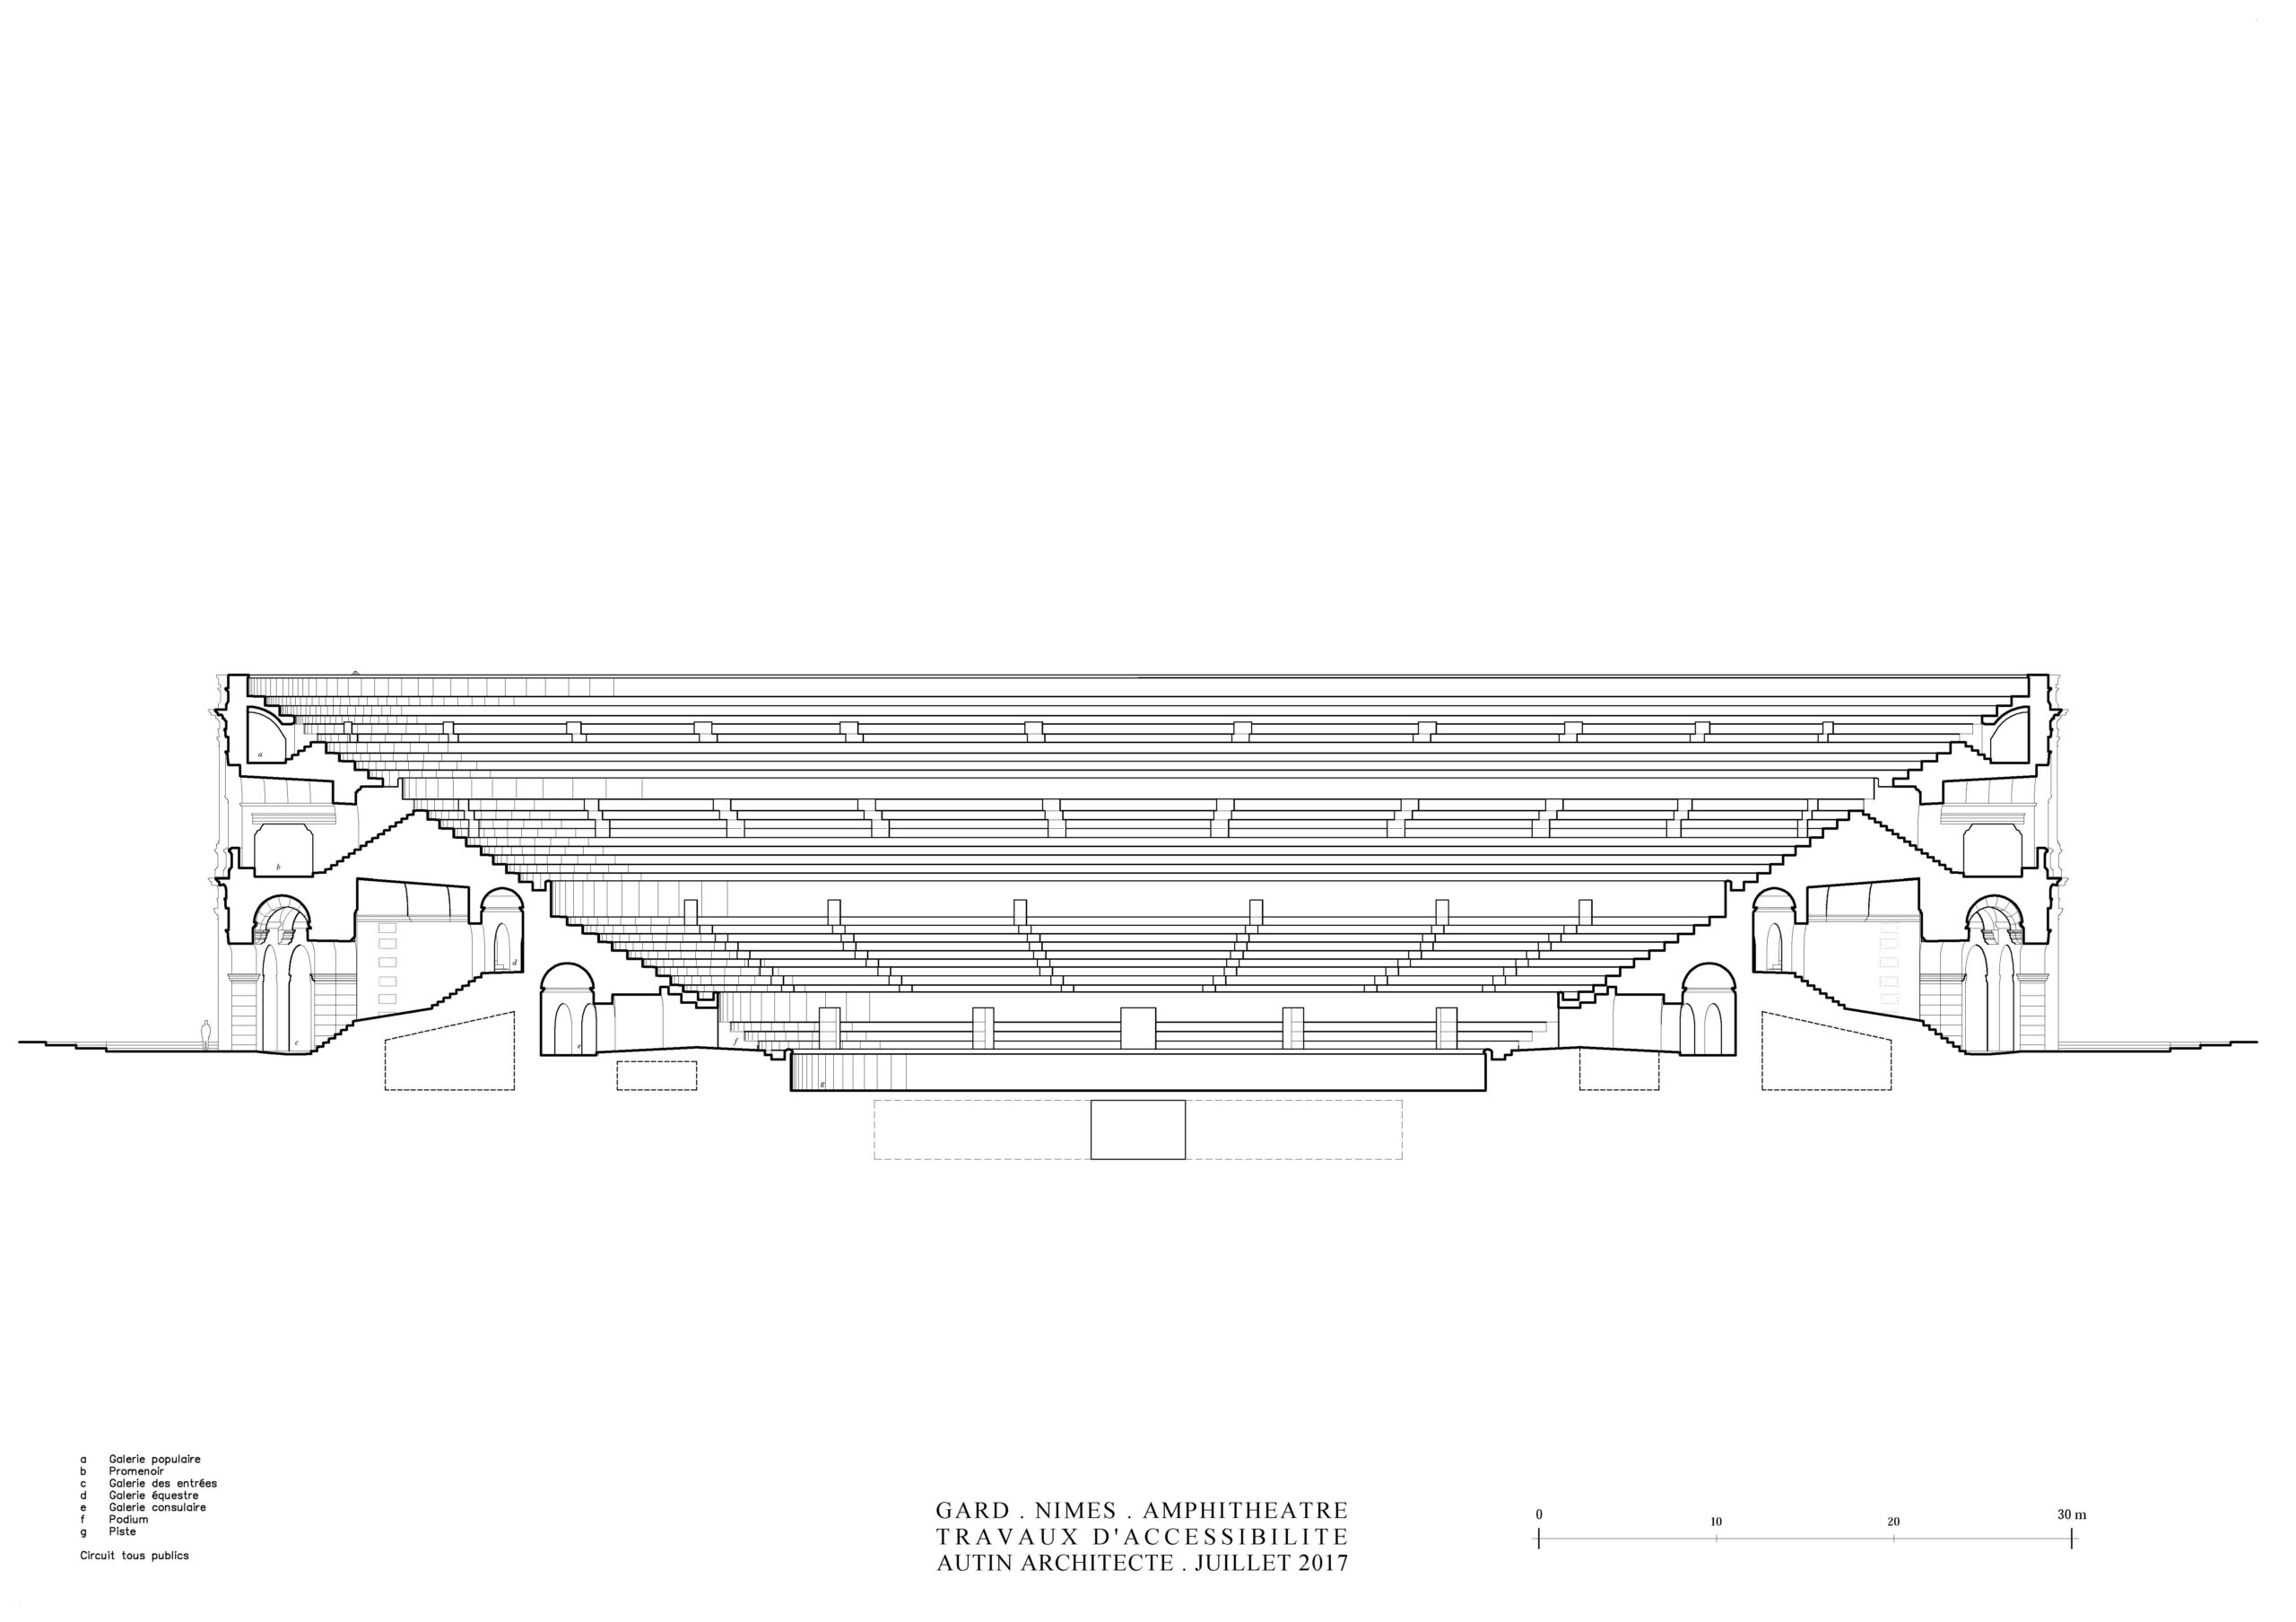 Blueprints of an amphitheater